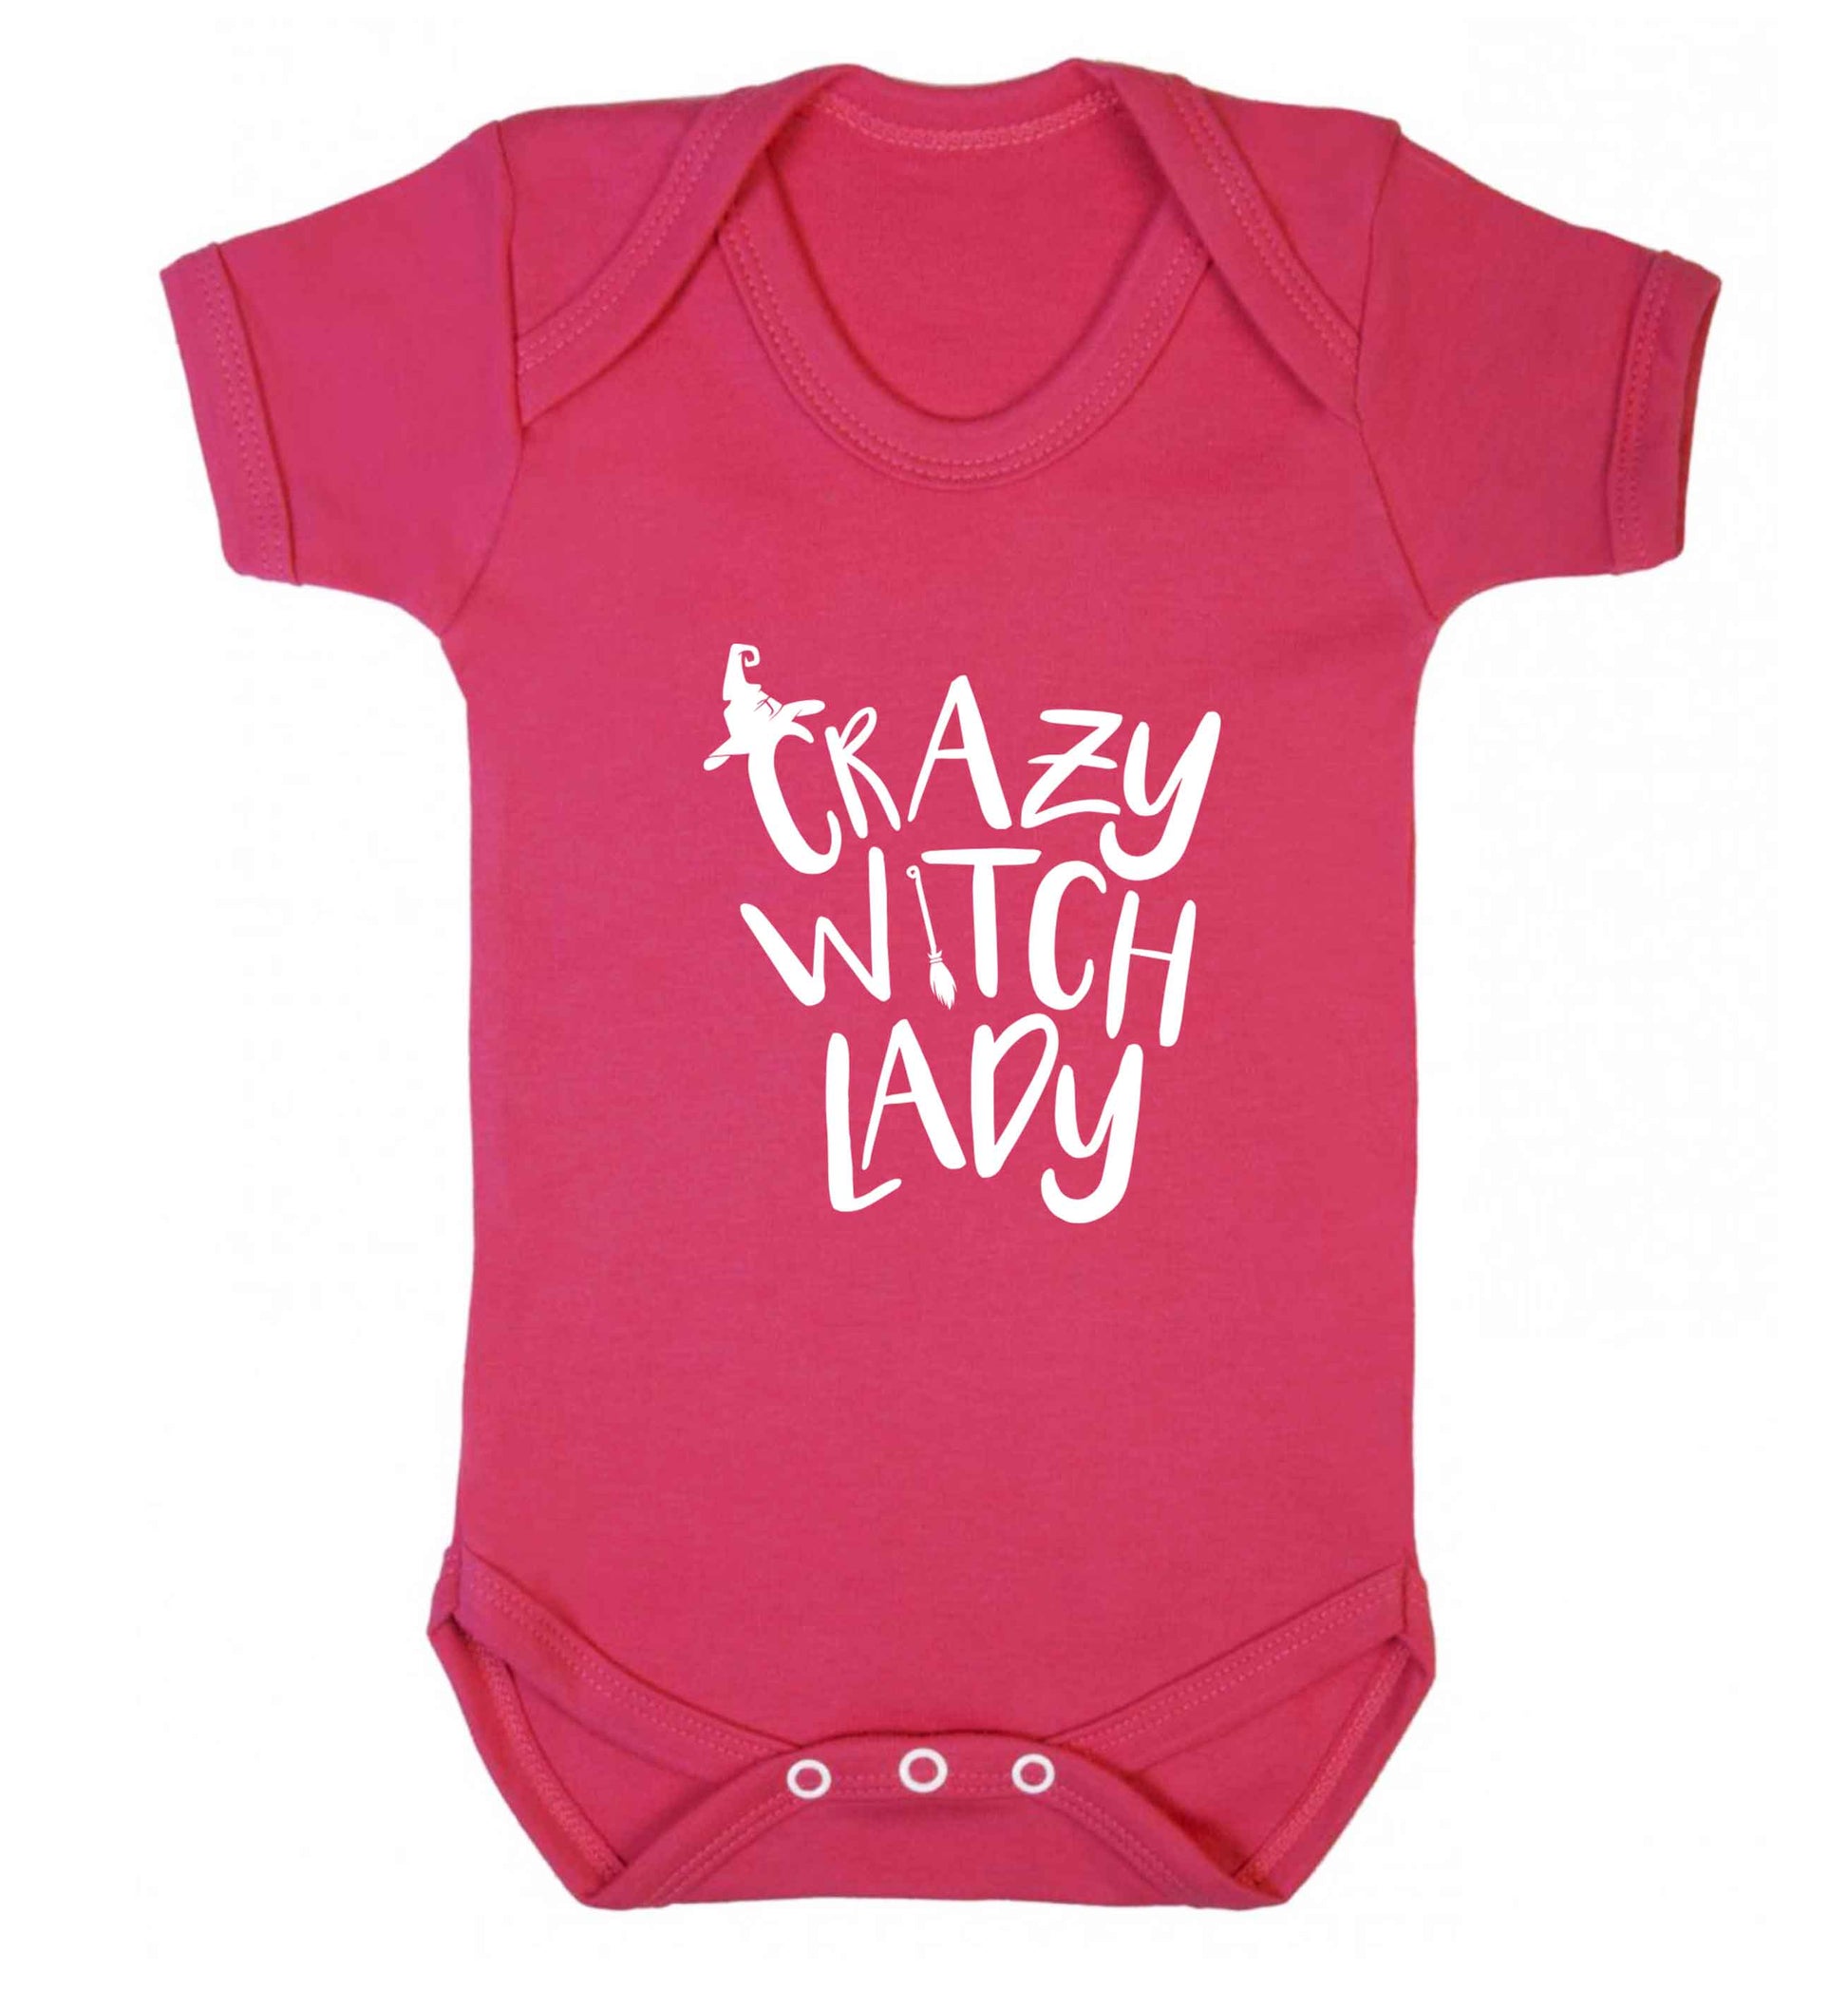 Crazy witch lady baby vest dark pink 18-24 months